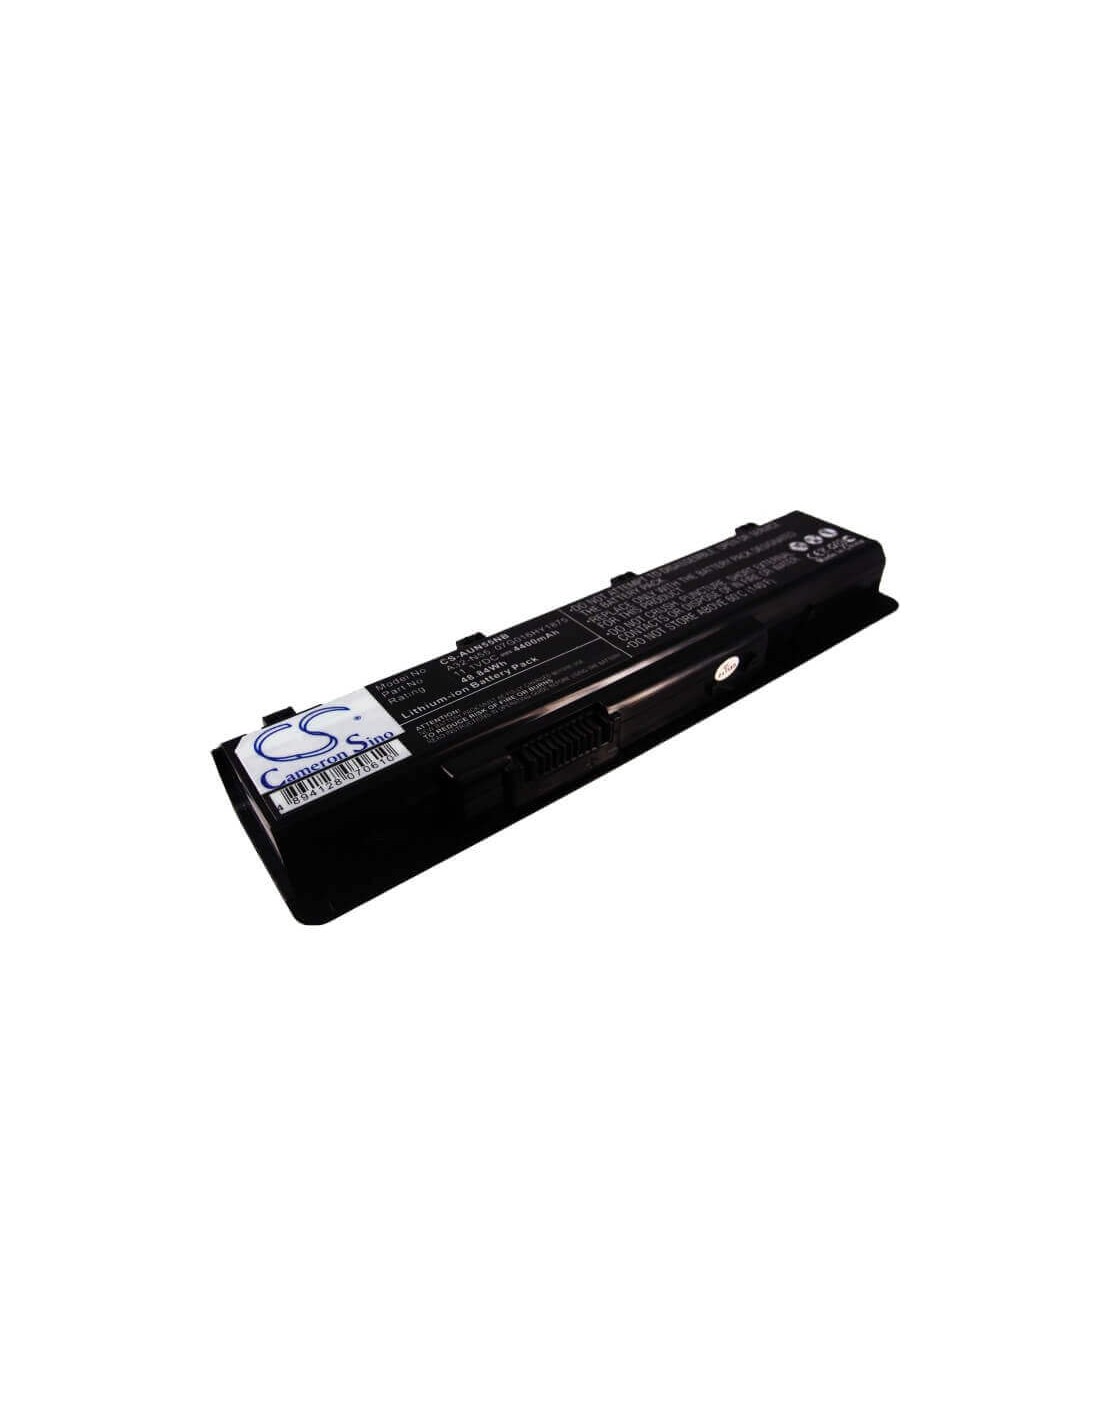 Black Battery for Asus N45, N45e, N45s 11.1V, 4400mAh - 48.84Wh